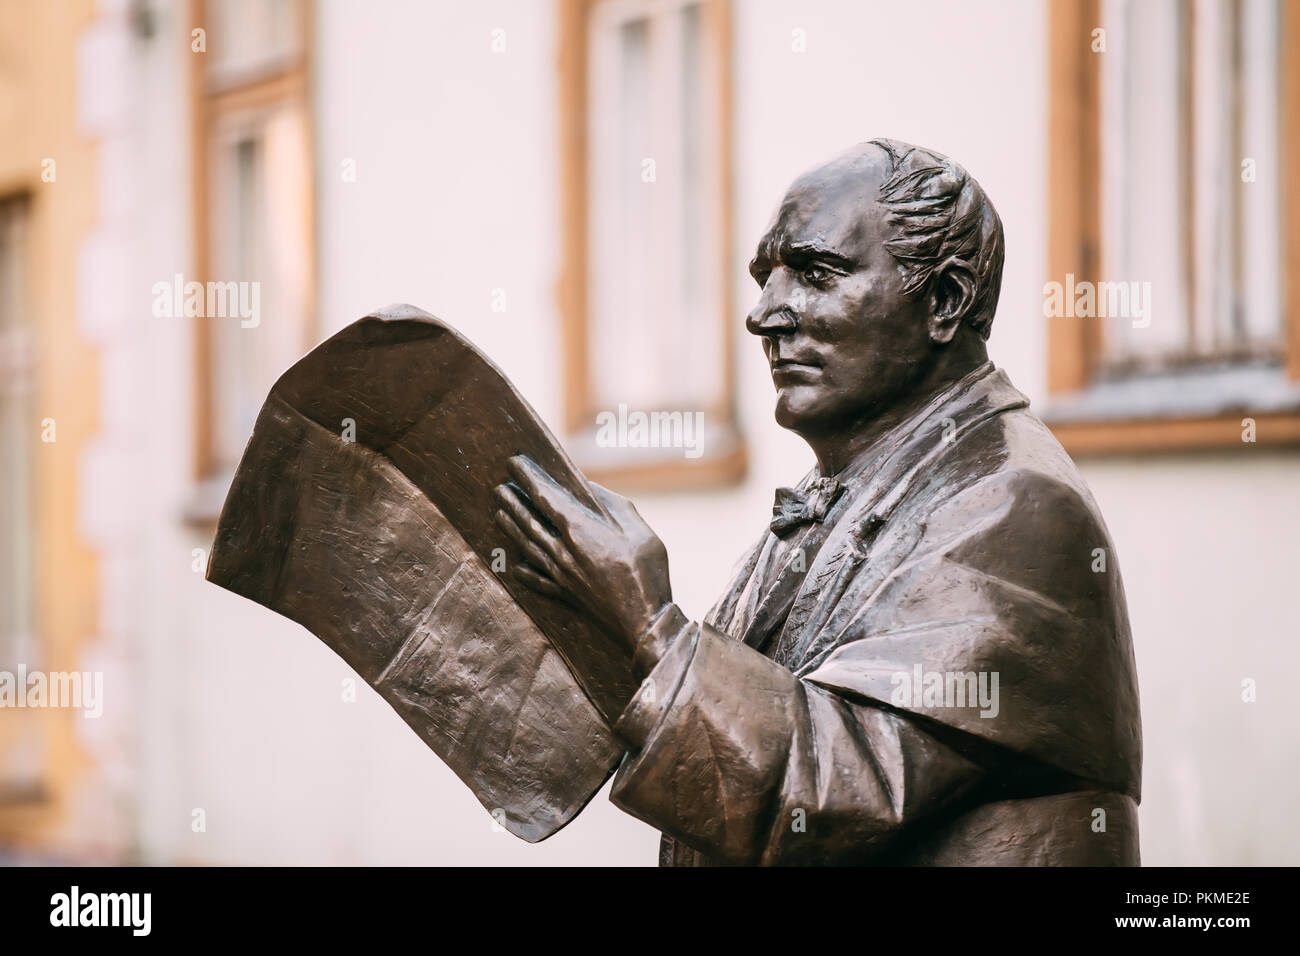 Pärnu, Estland - Dezember 14, 2017: Statue von Johann Voldemar Jannsen, einer der Väter der Unabhängigkeitsbewegung in Estland. Dieses Denkmal für Jannse Stockfoto